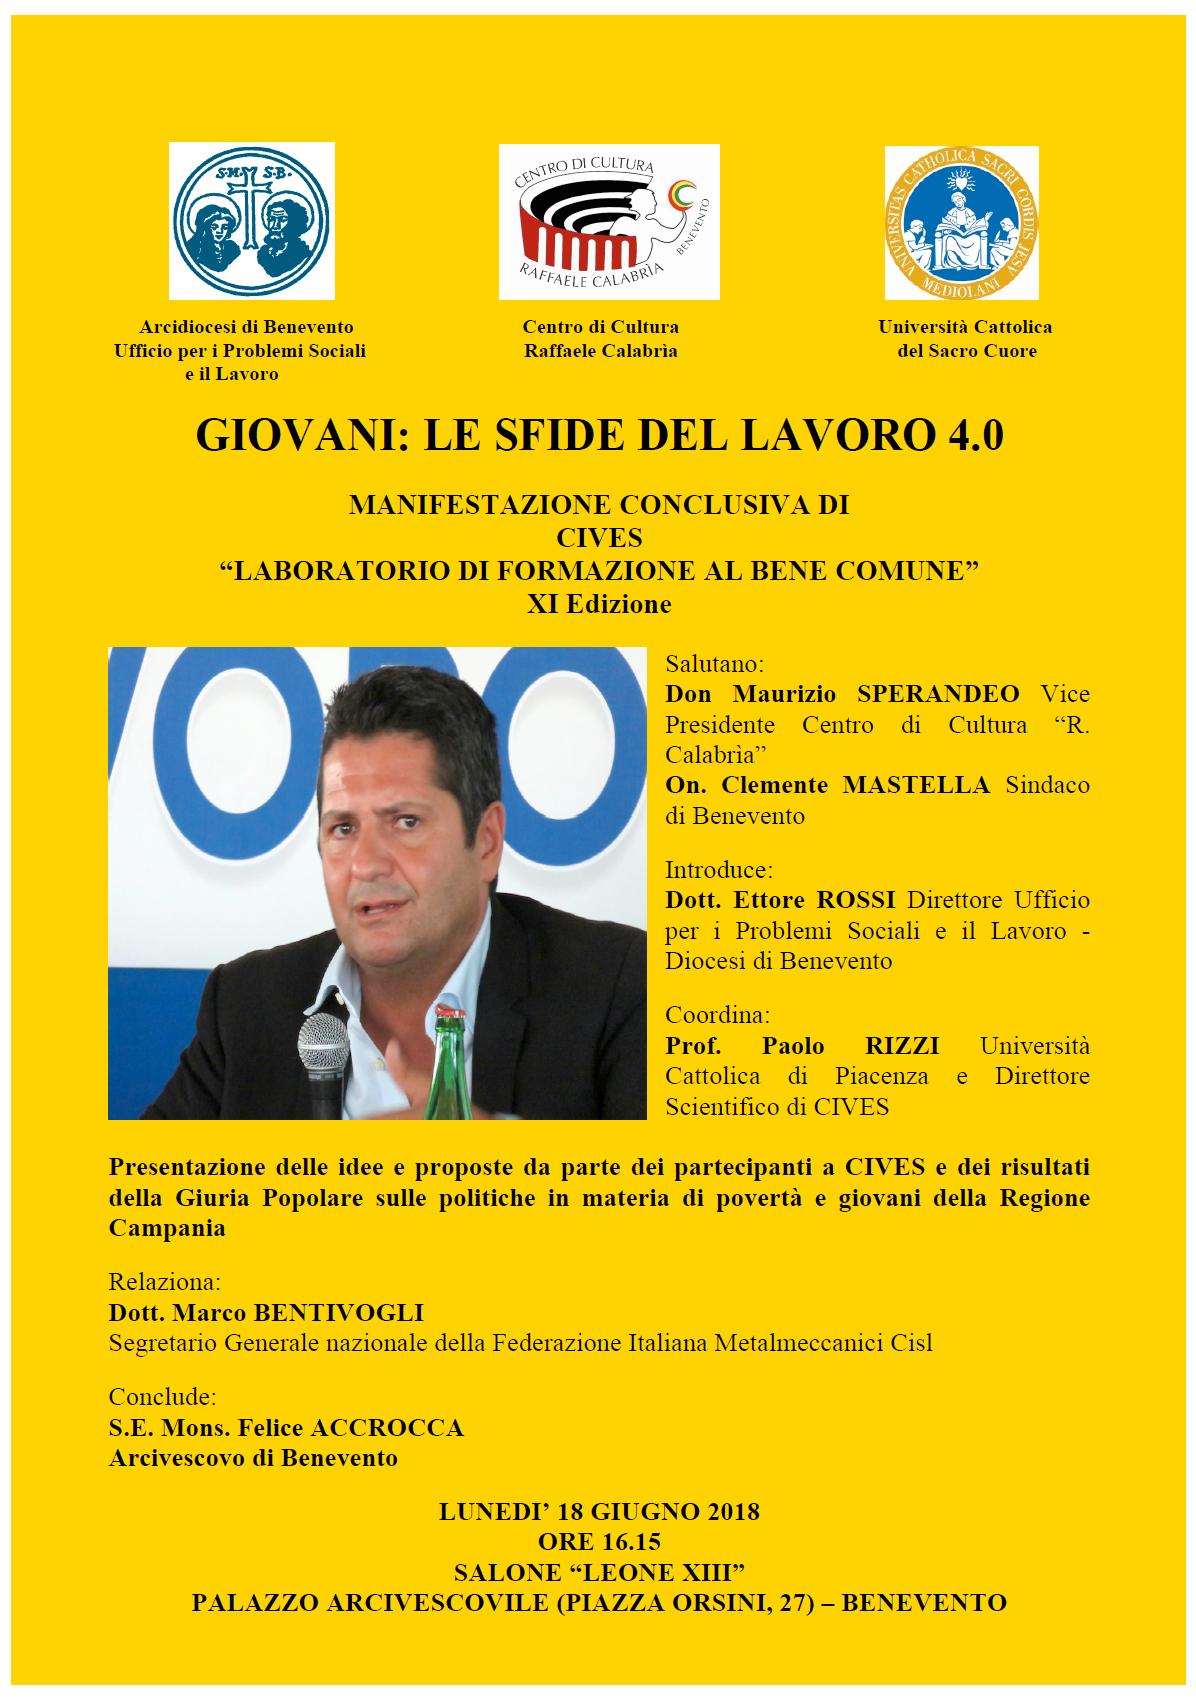 Benevento| Cives, conclusioni con Marco Bentivogli della Cisl su giovani e lavoro 4.0